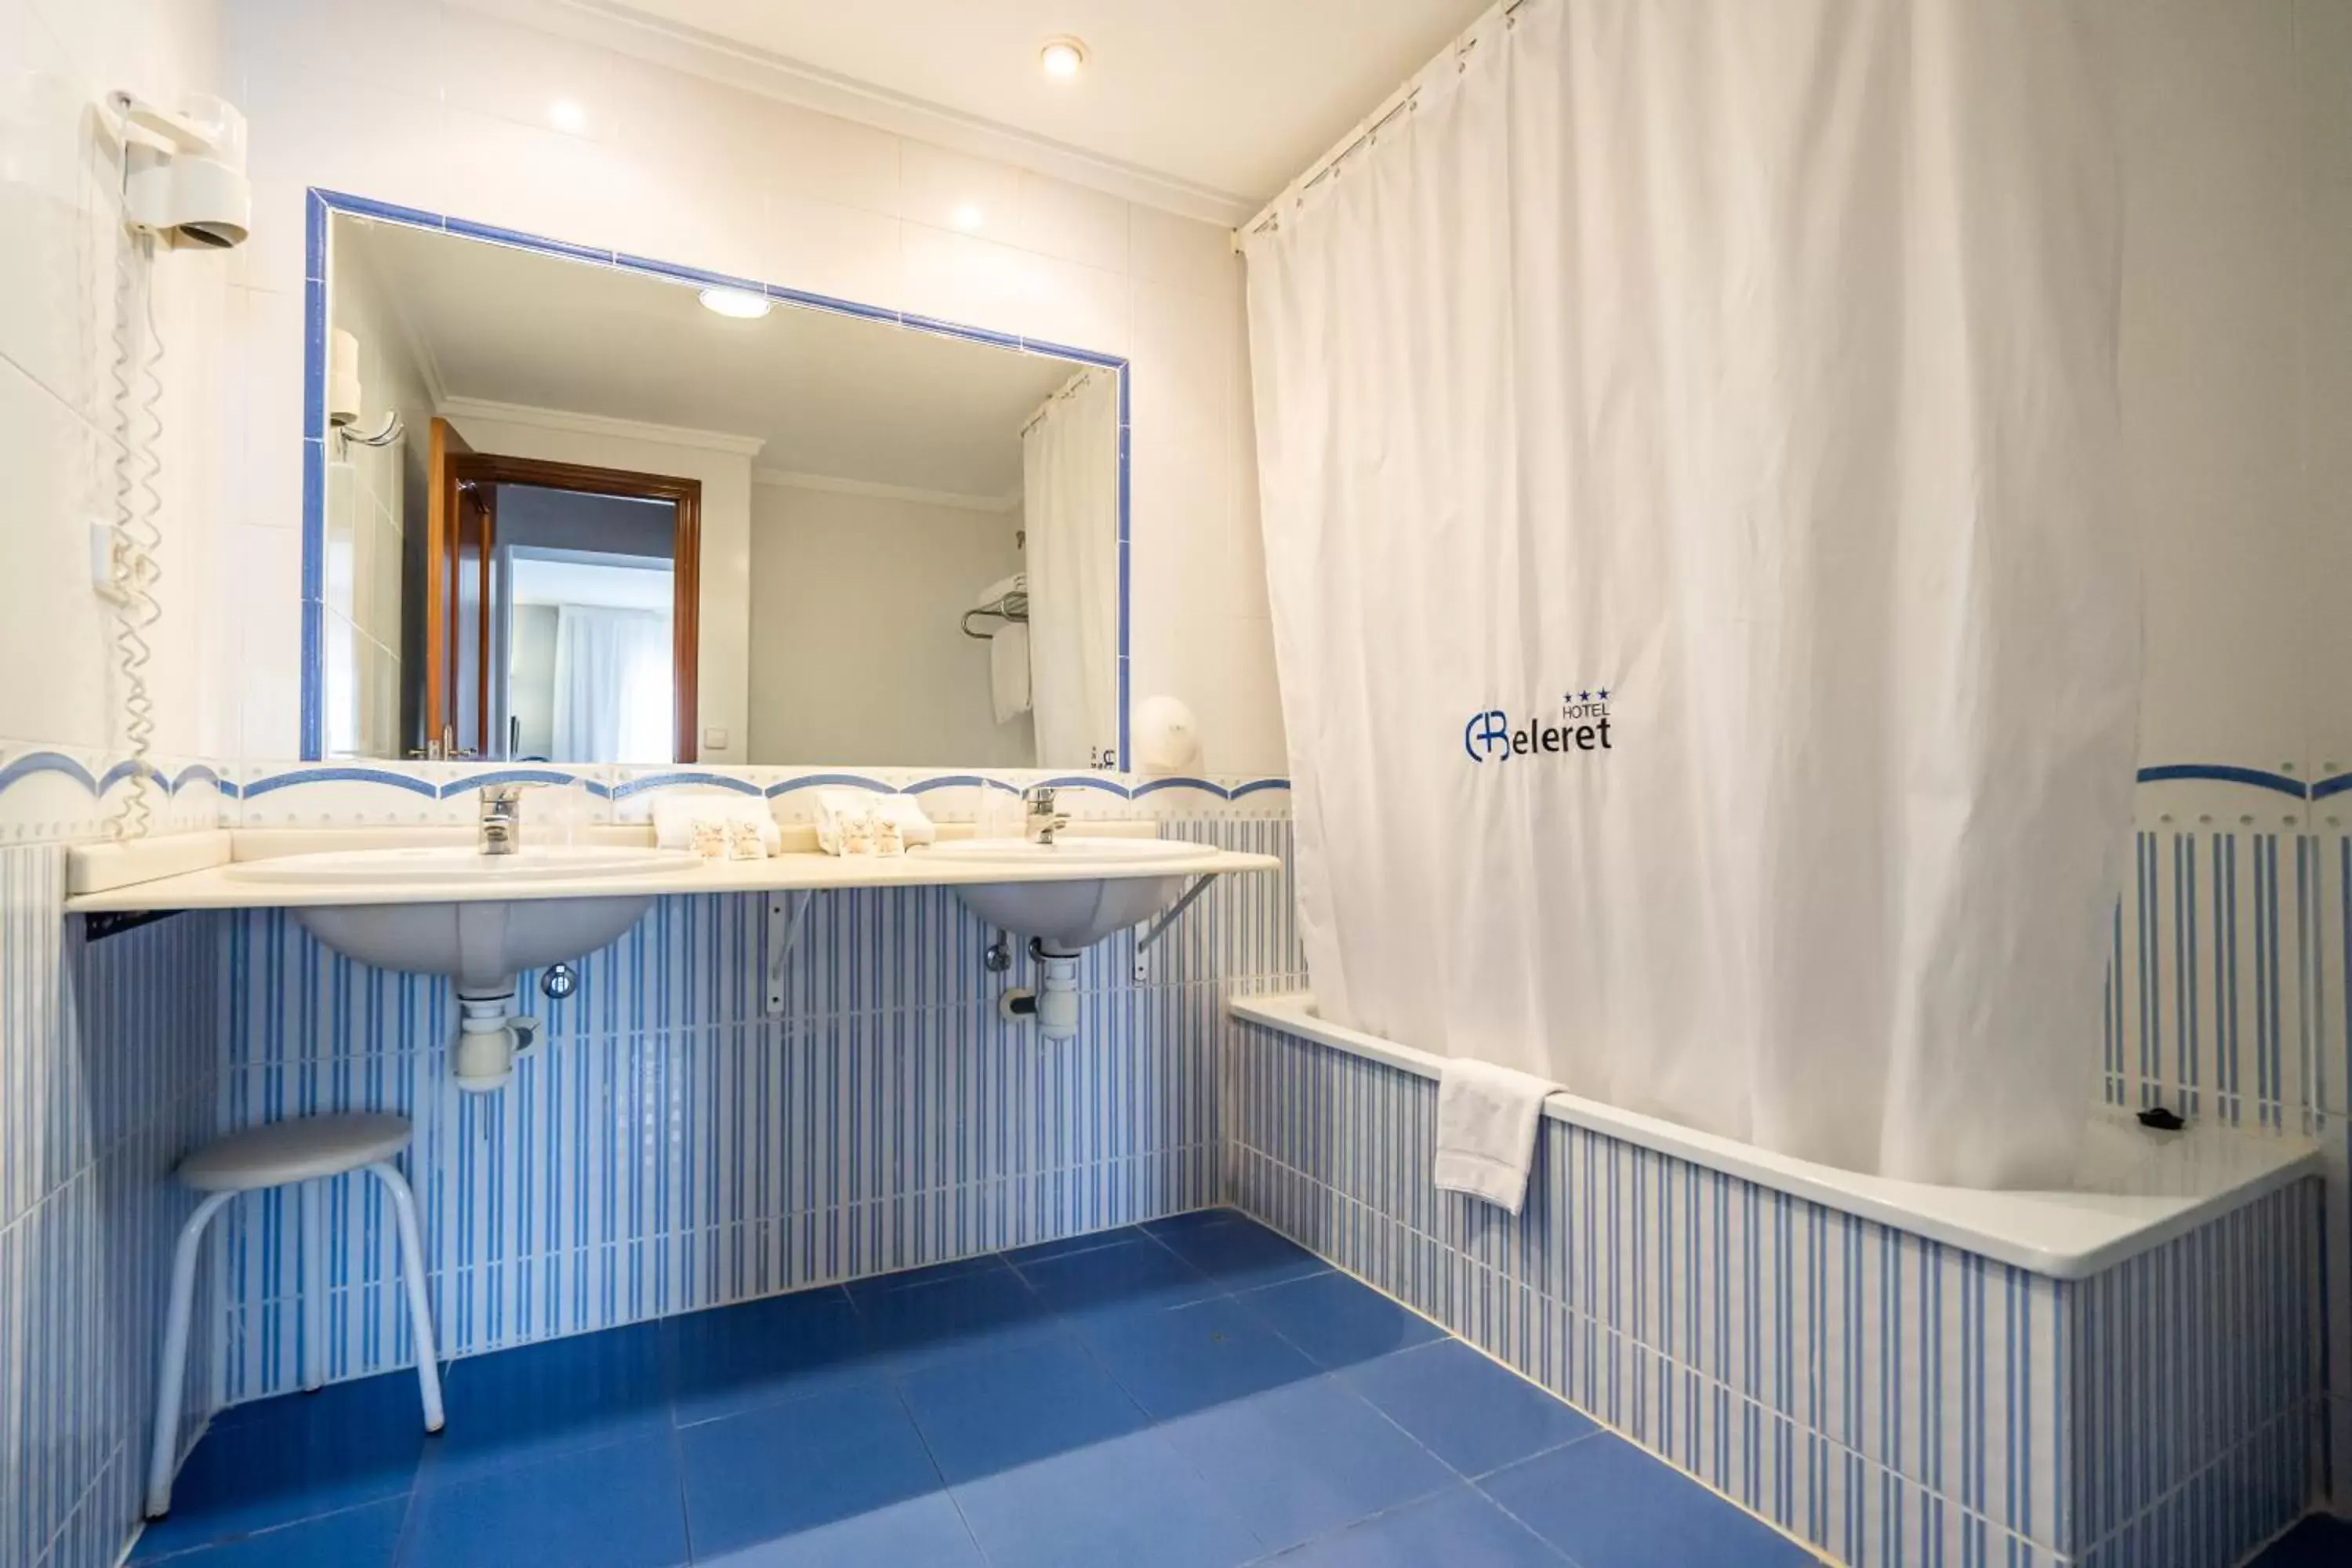 Bathroom in Hotel Beleret